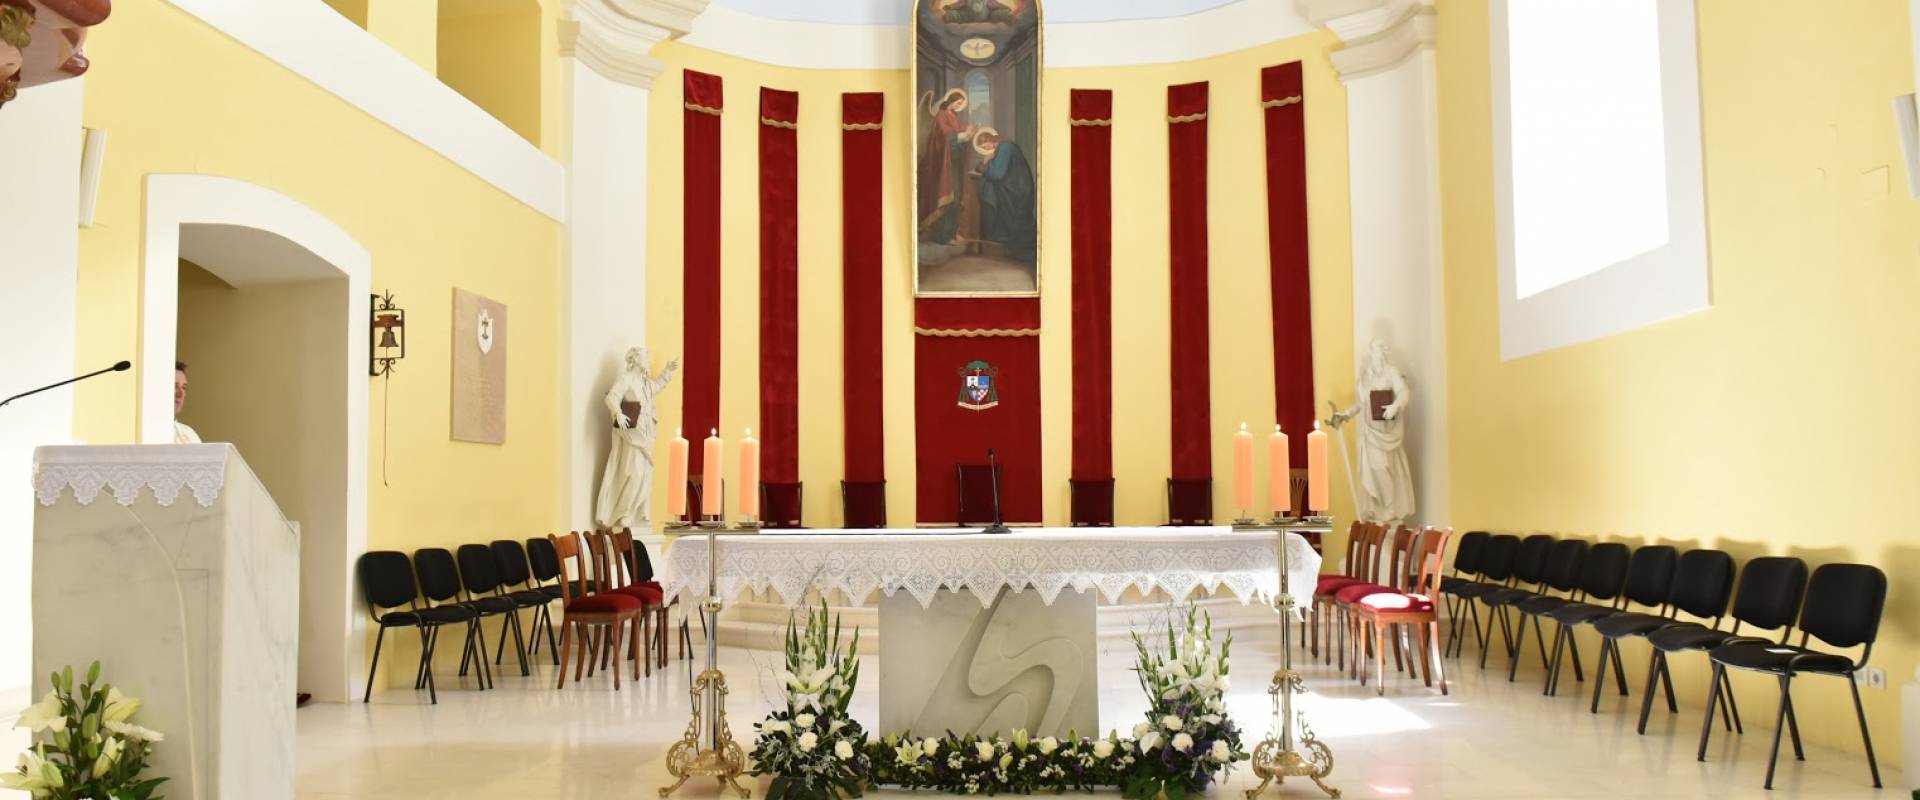 Katedrala Navještenja Blažene Djevice Marije u Gospiću